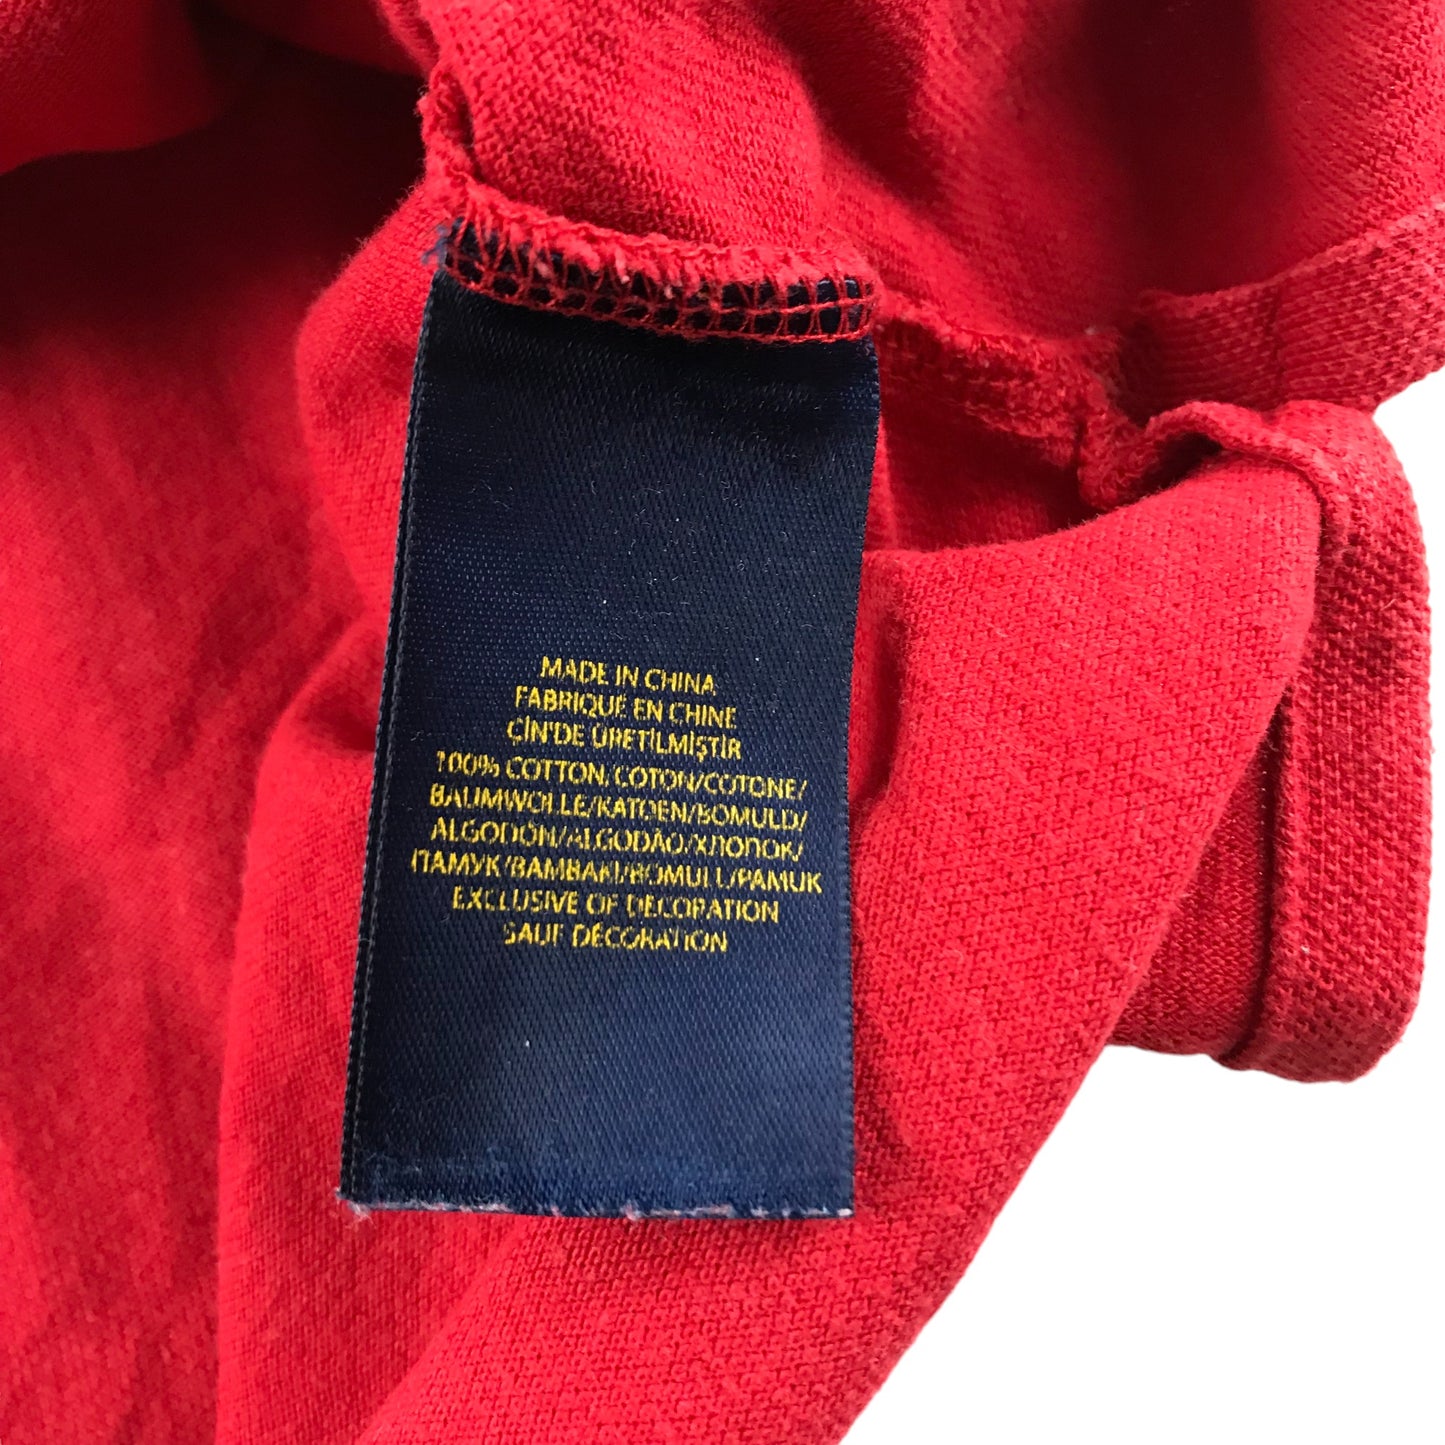 Ralph Lauren Polo Shirt Age 15 Red Short Sleeve